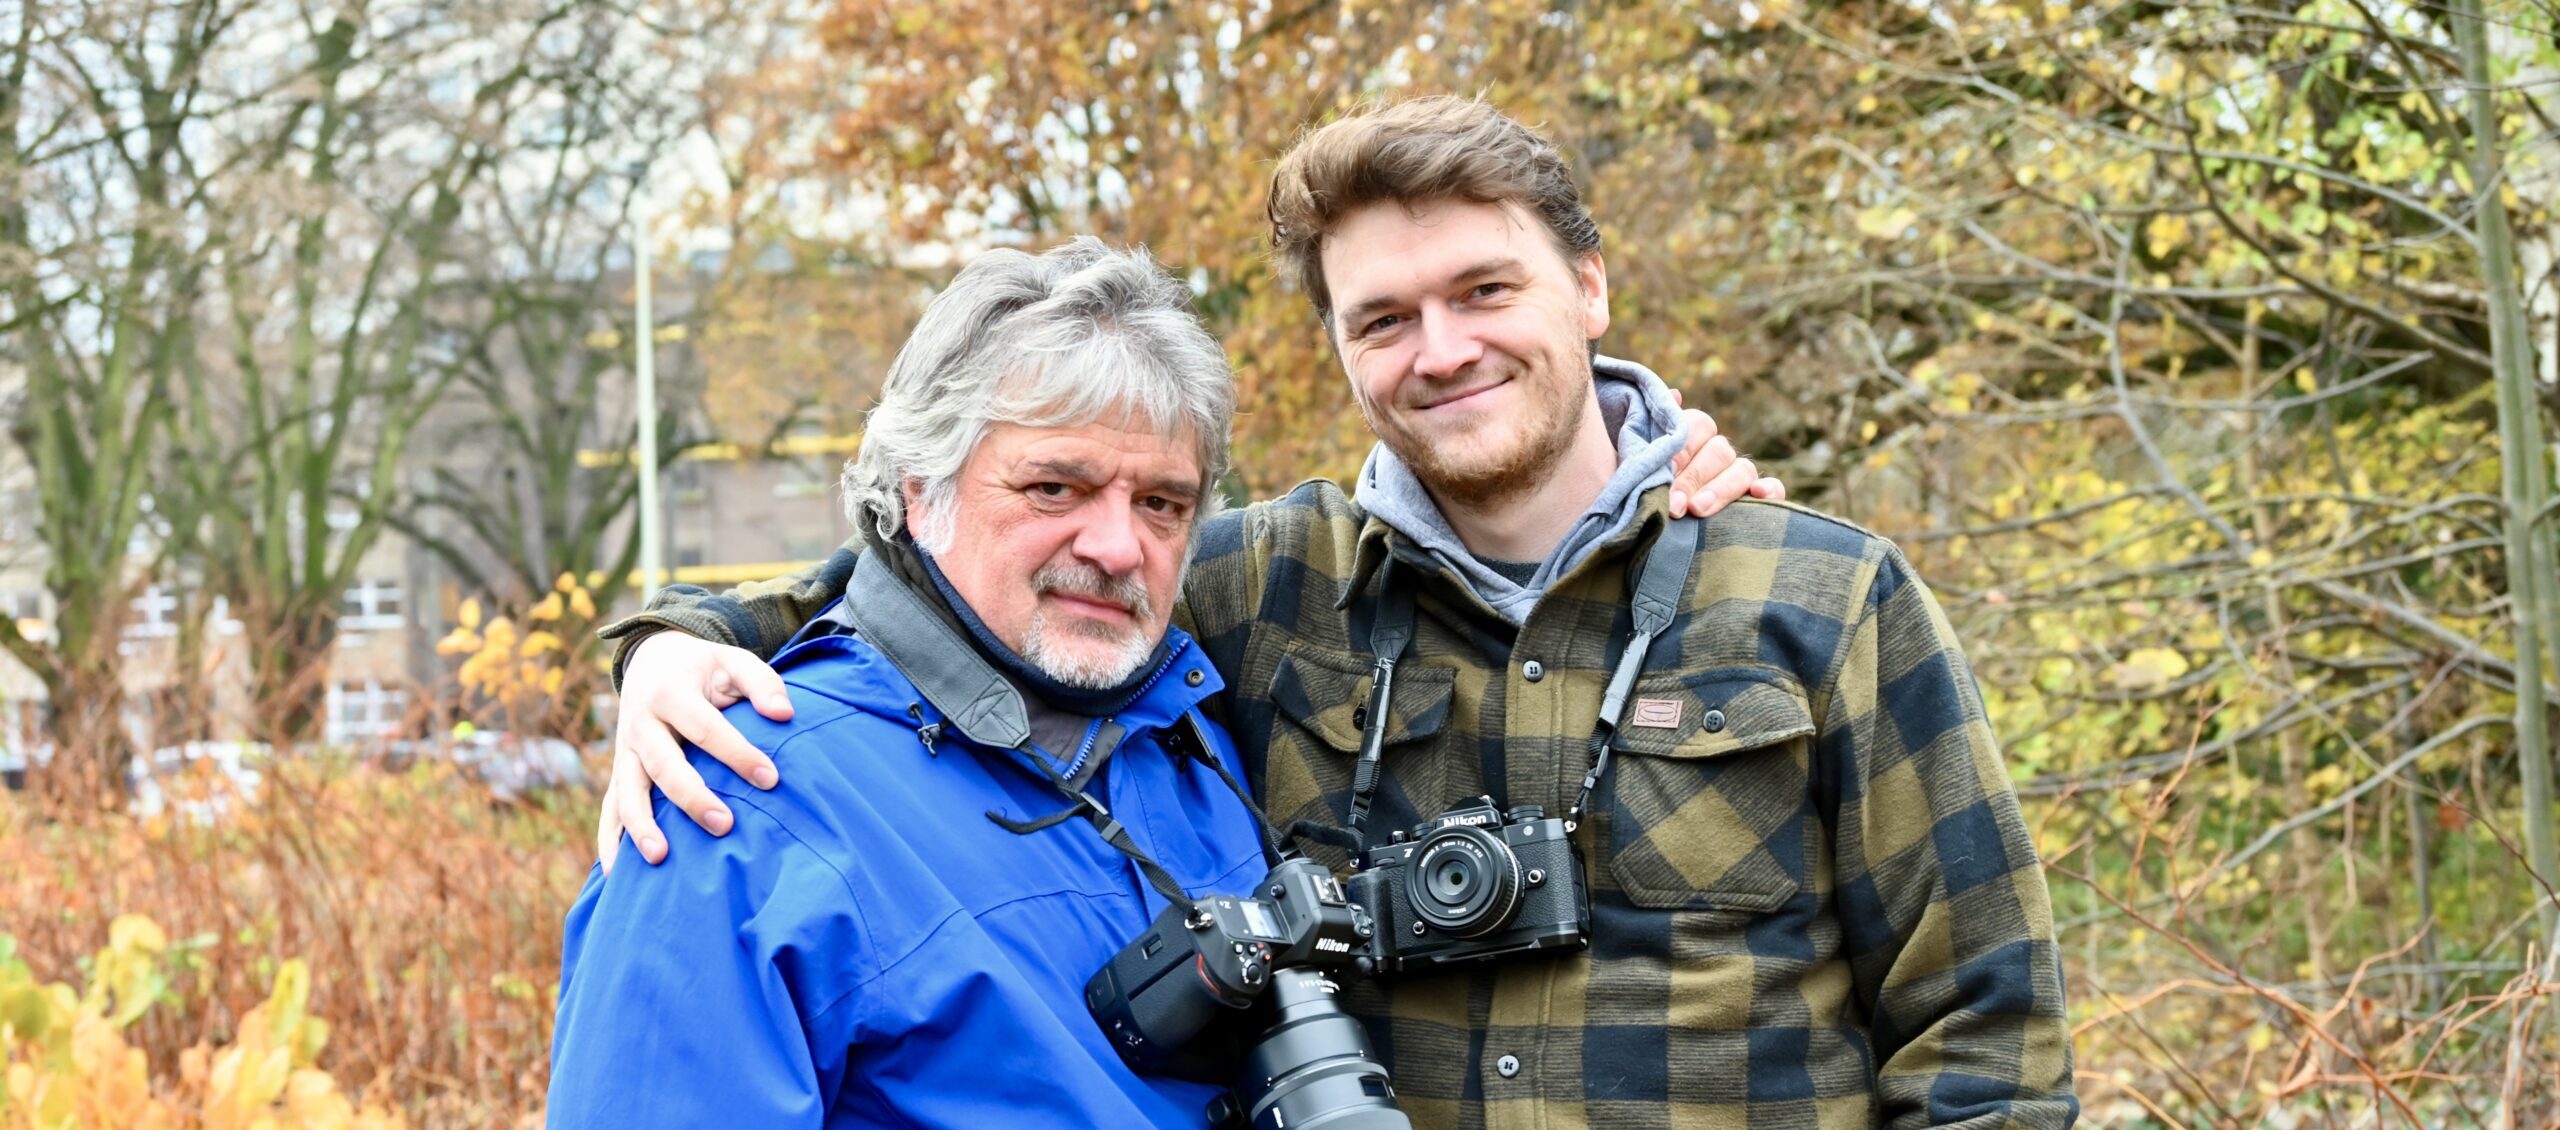 Wilrijkse sportfotograaf Marc Goyvaerts geeft fakkel over aan zoon Tom